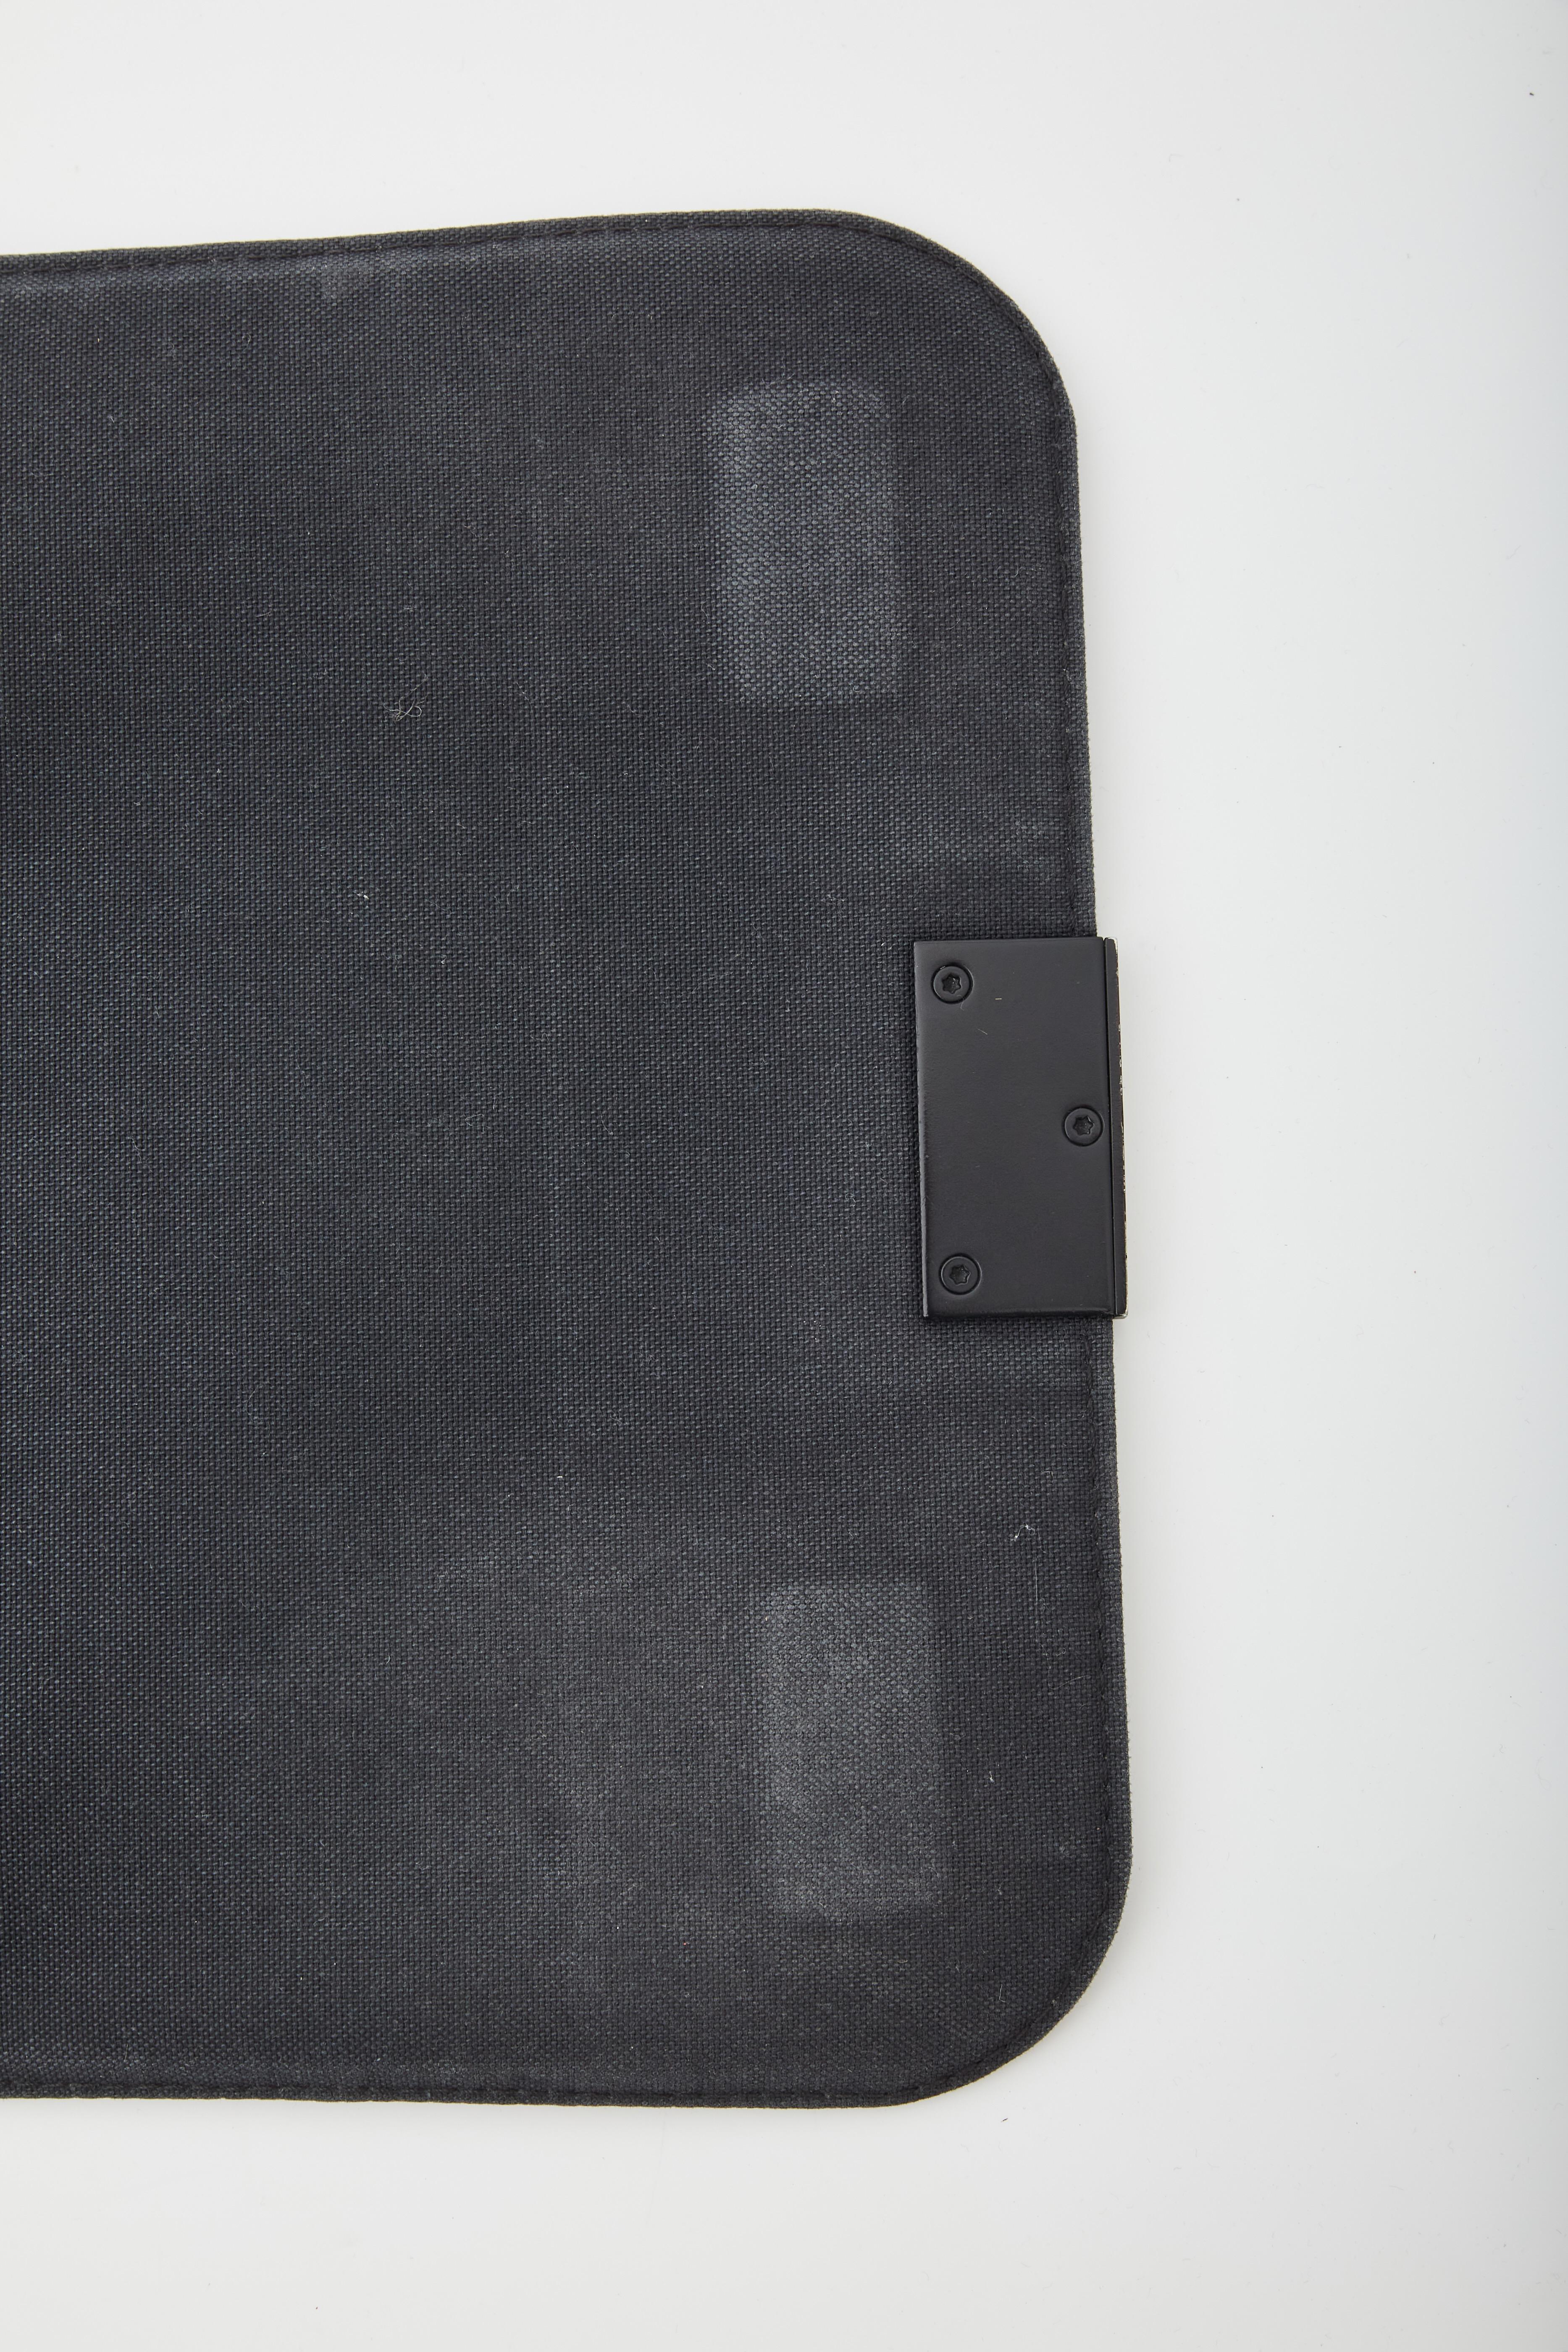 Black Louis Vuitton Damier Graphite District Messenger Bag PM (2015)